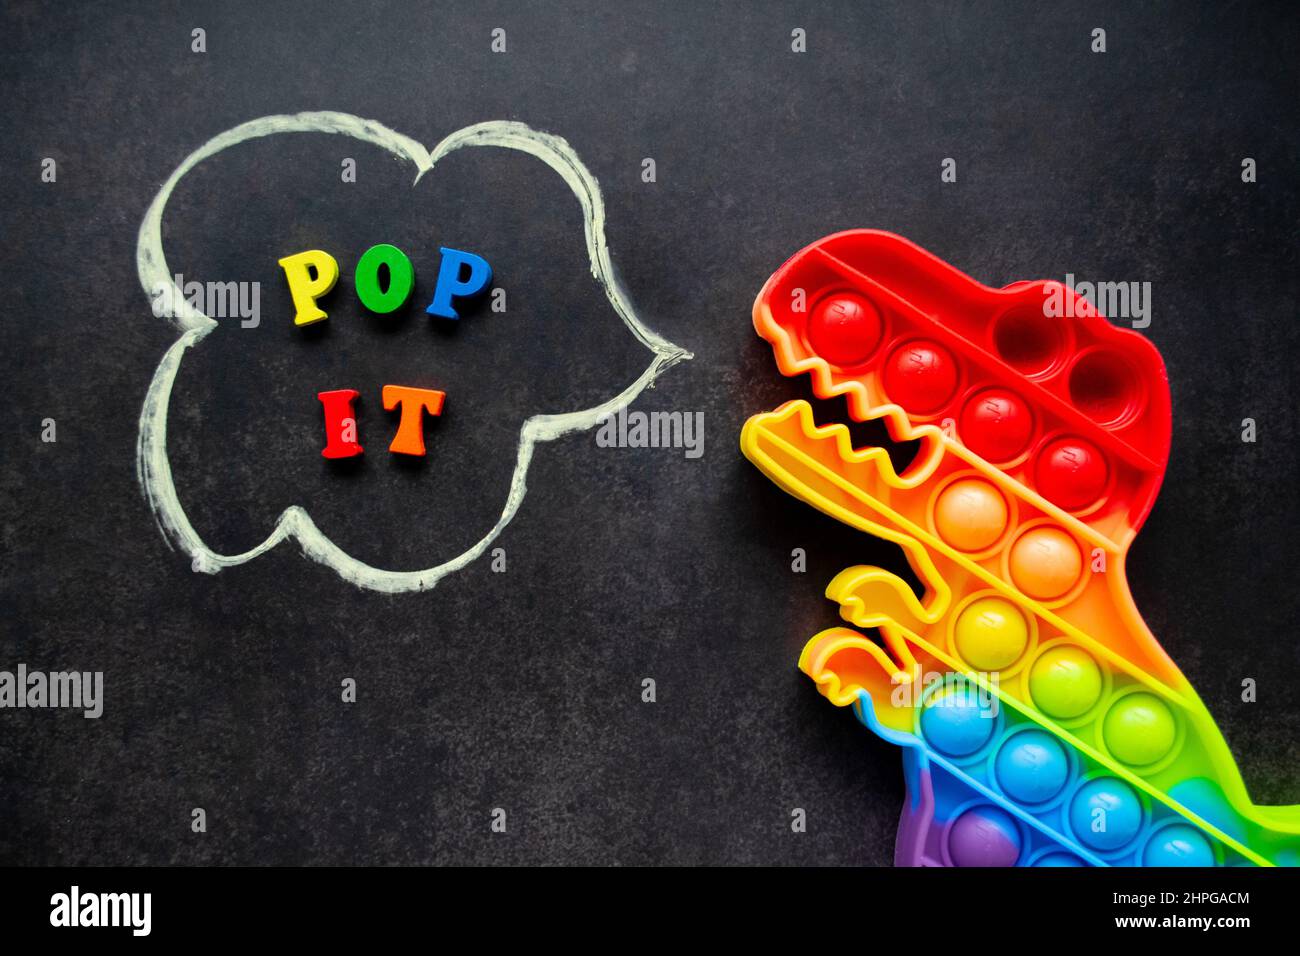 Pop it Dinosaurier Spielzeug Regenbogenfarben auf schwarzem Hintergrund mit bunten Buchstaben und der Inschrift - Pop it in einer Sprechblase. Stockfoto